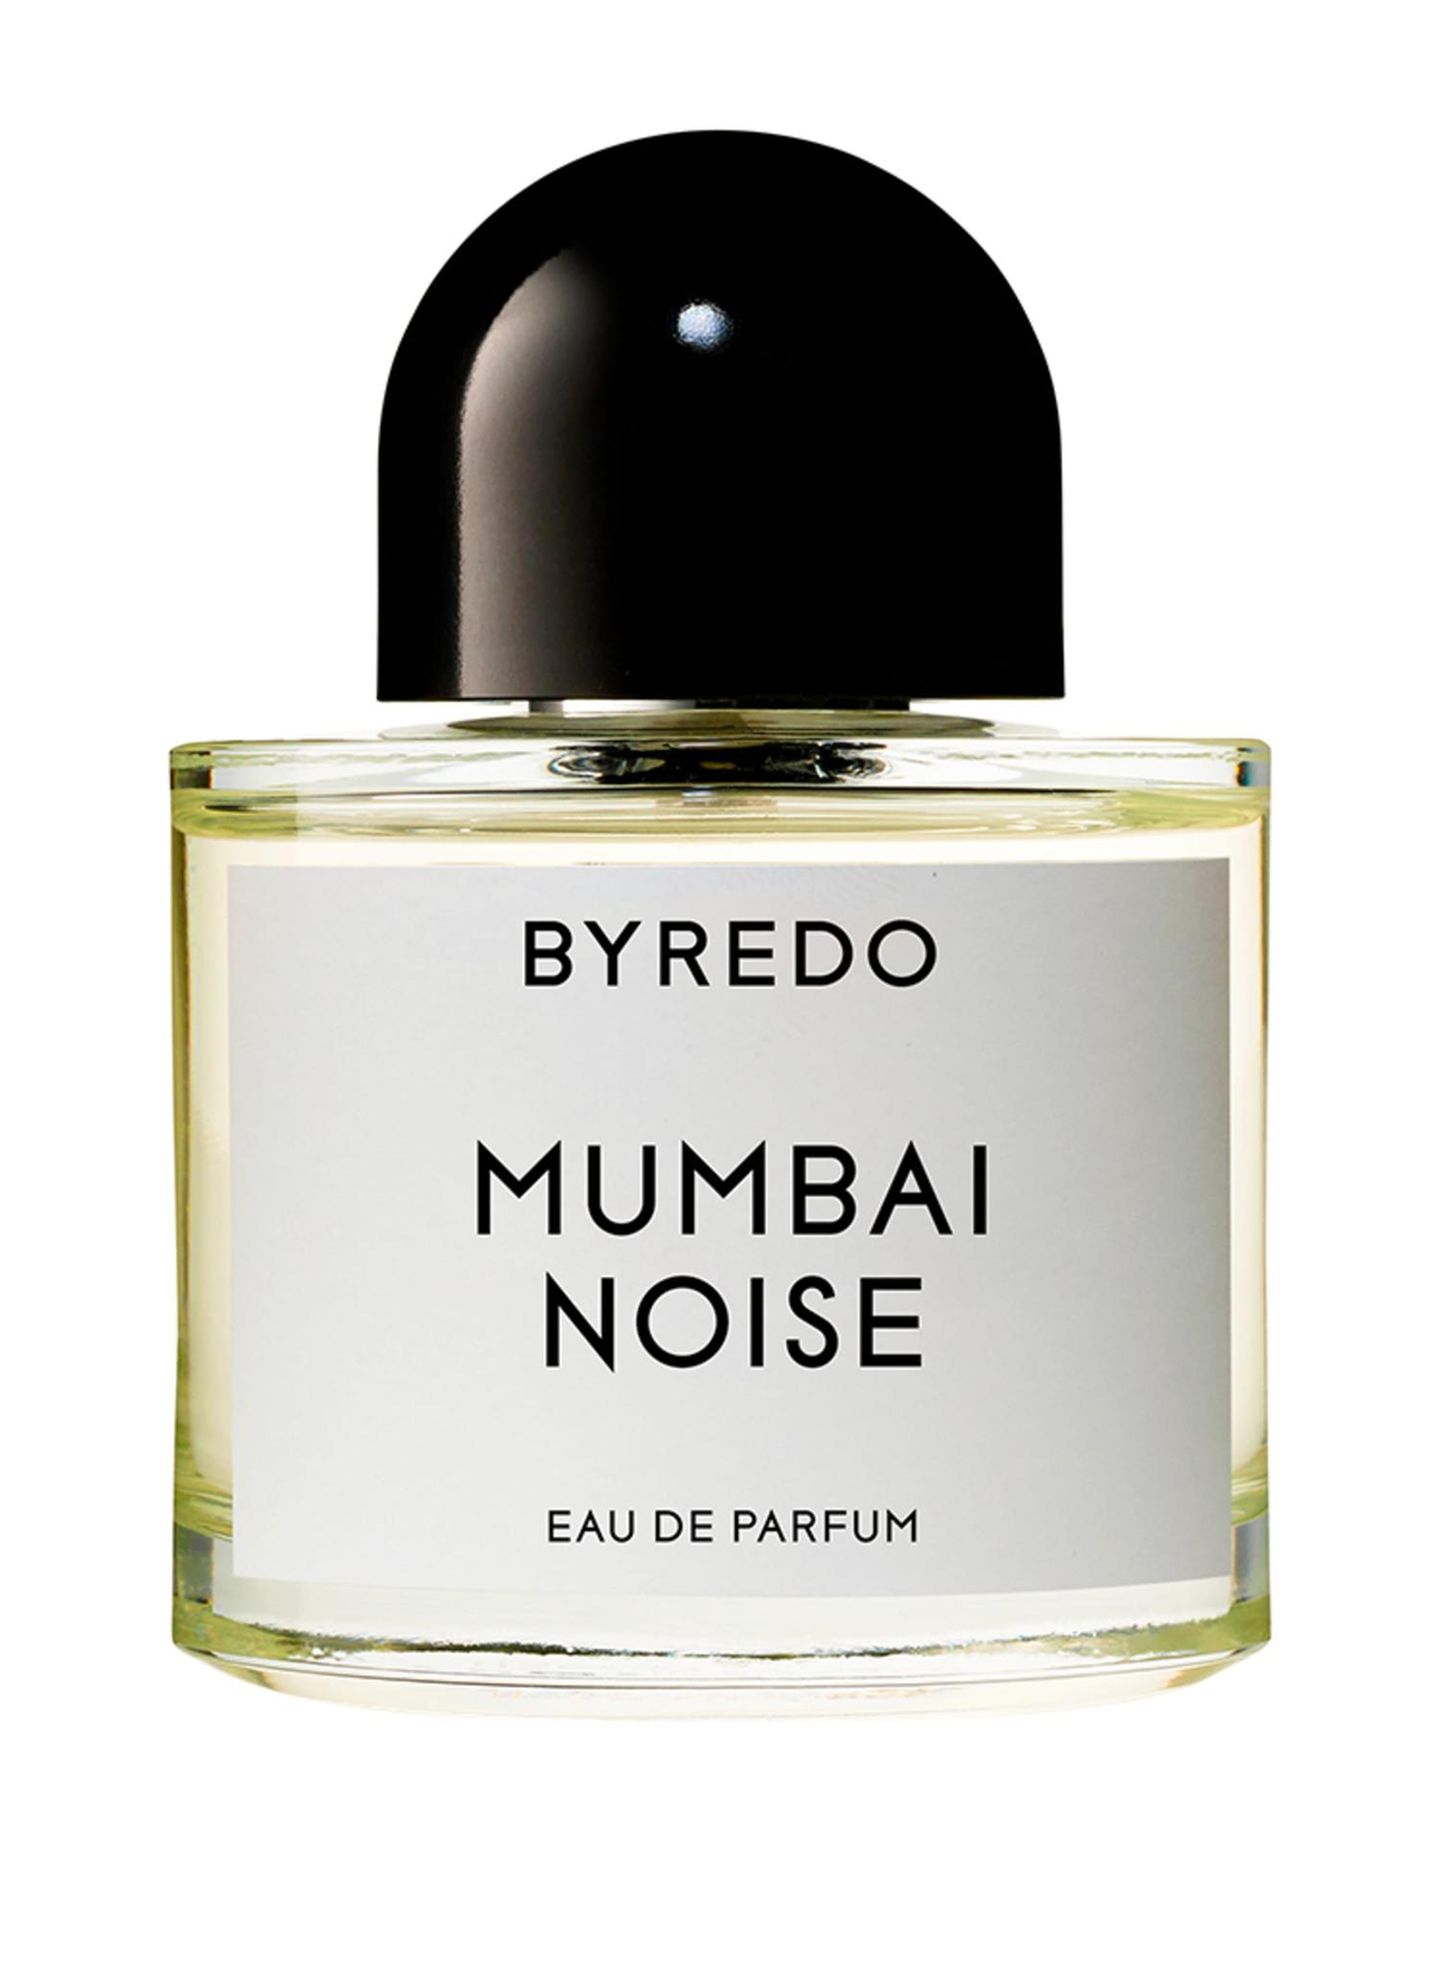 Produktfoto eines Parfums der Marke Byredo.